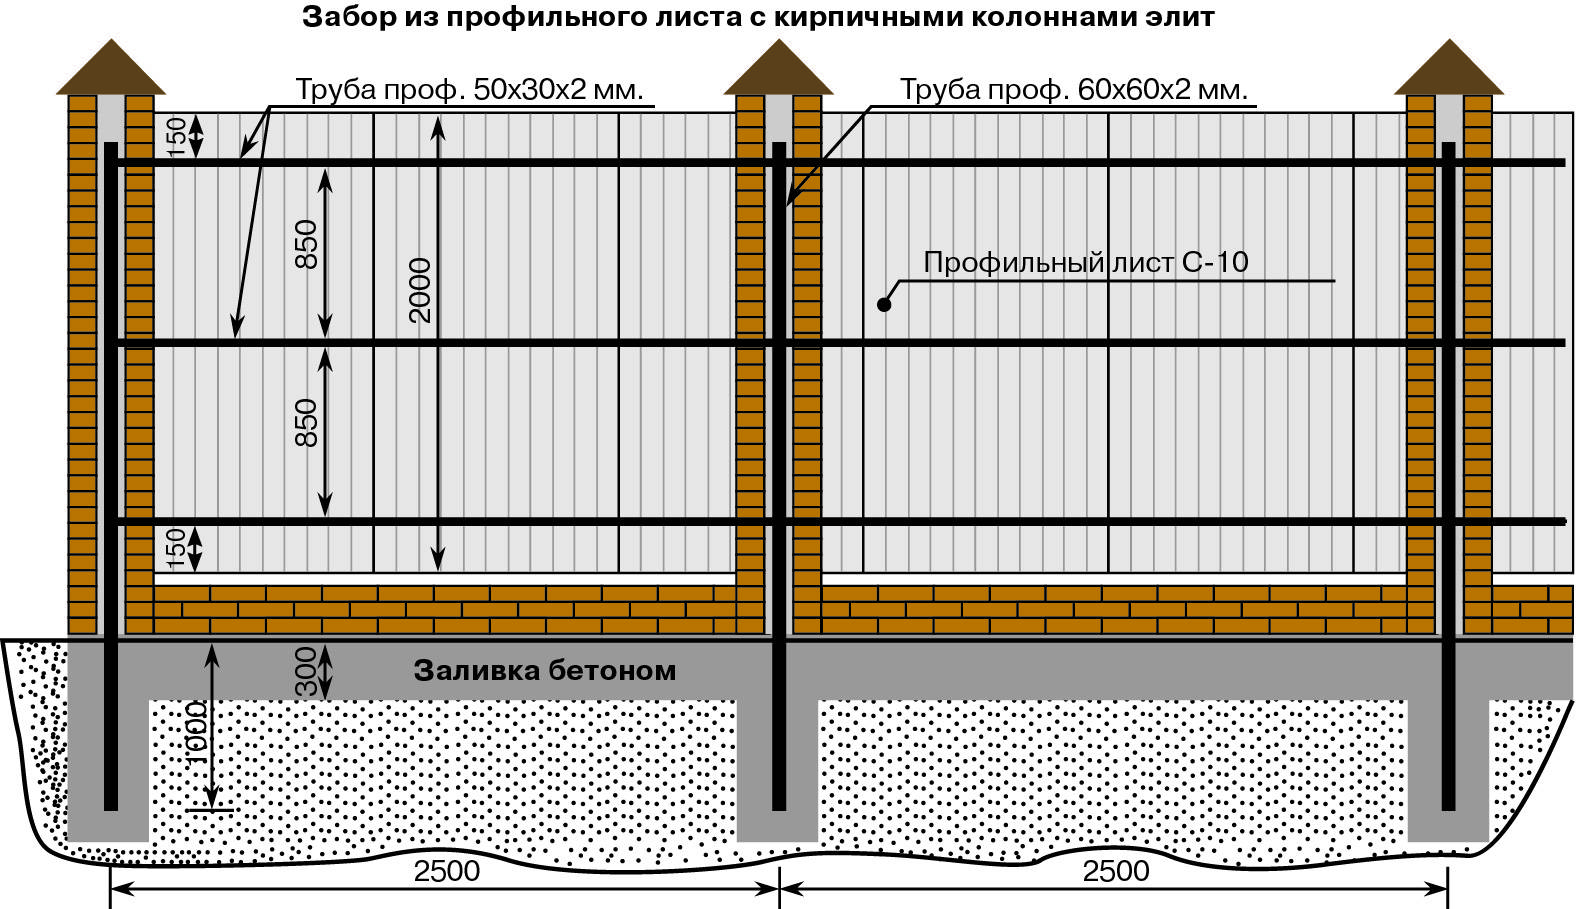 Забор из профнастила своими руками | 5domov.ru - статьи о строительстве, ремонте, отделке домов и квартир